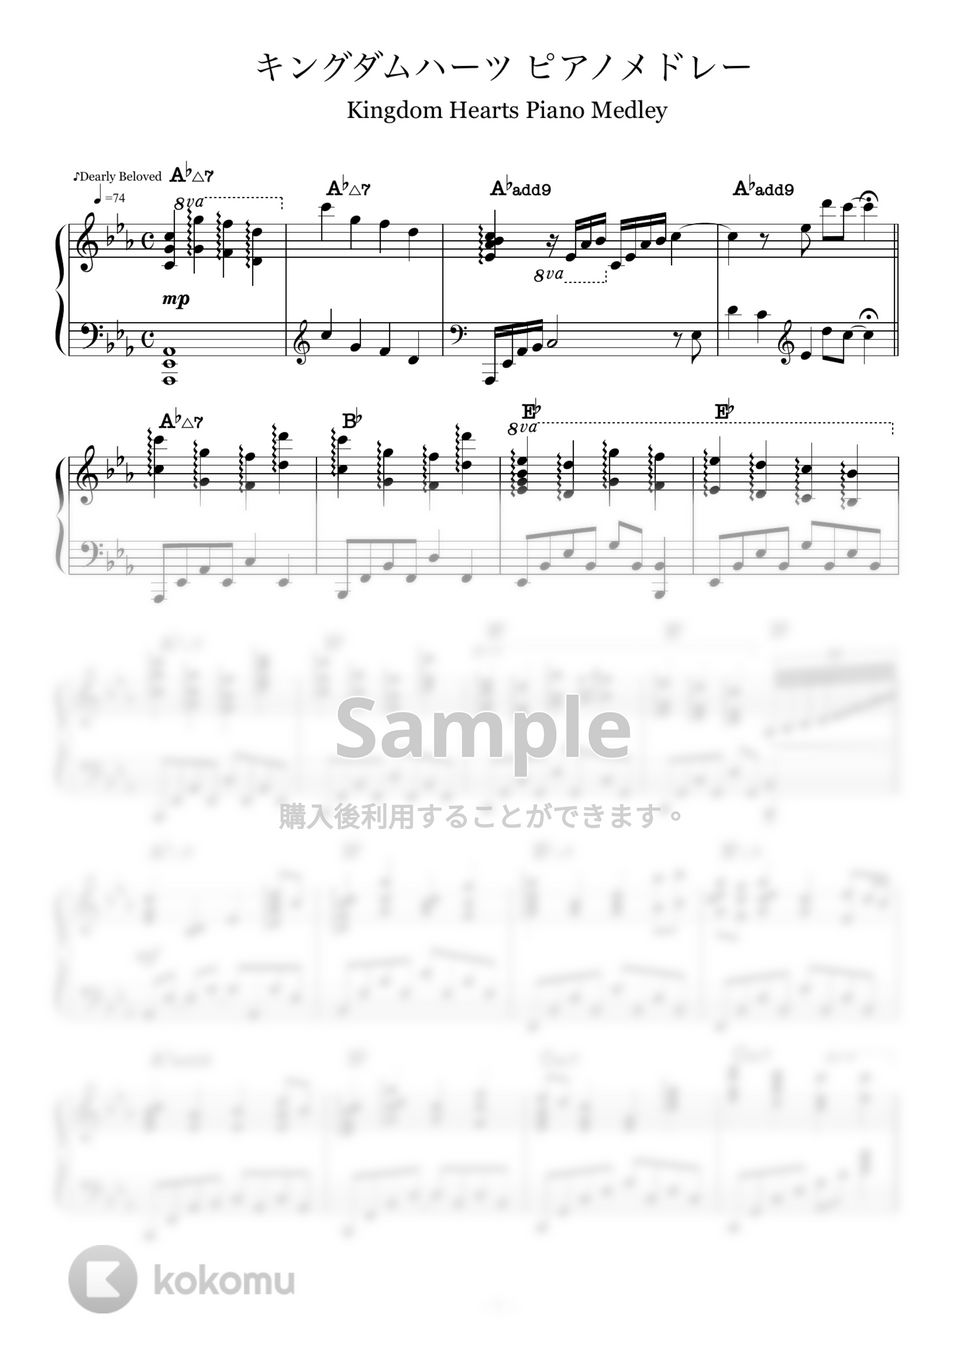 キングダムハーツ - キングダムハーツ ピアノメドレー (ピアノソロ/キングダムハーツ/コード有/Disney/ディズニー) by CAFUNE-かふね-